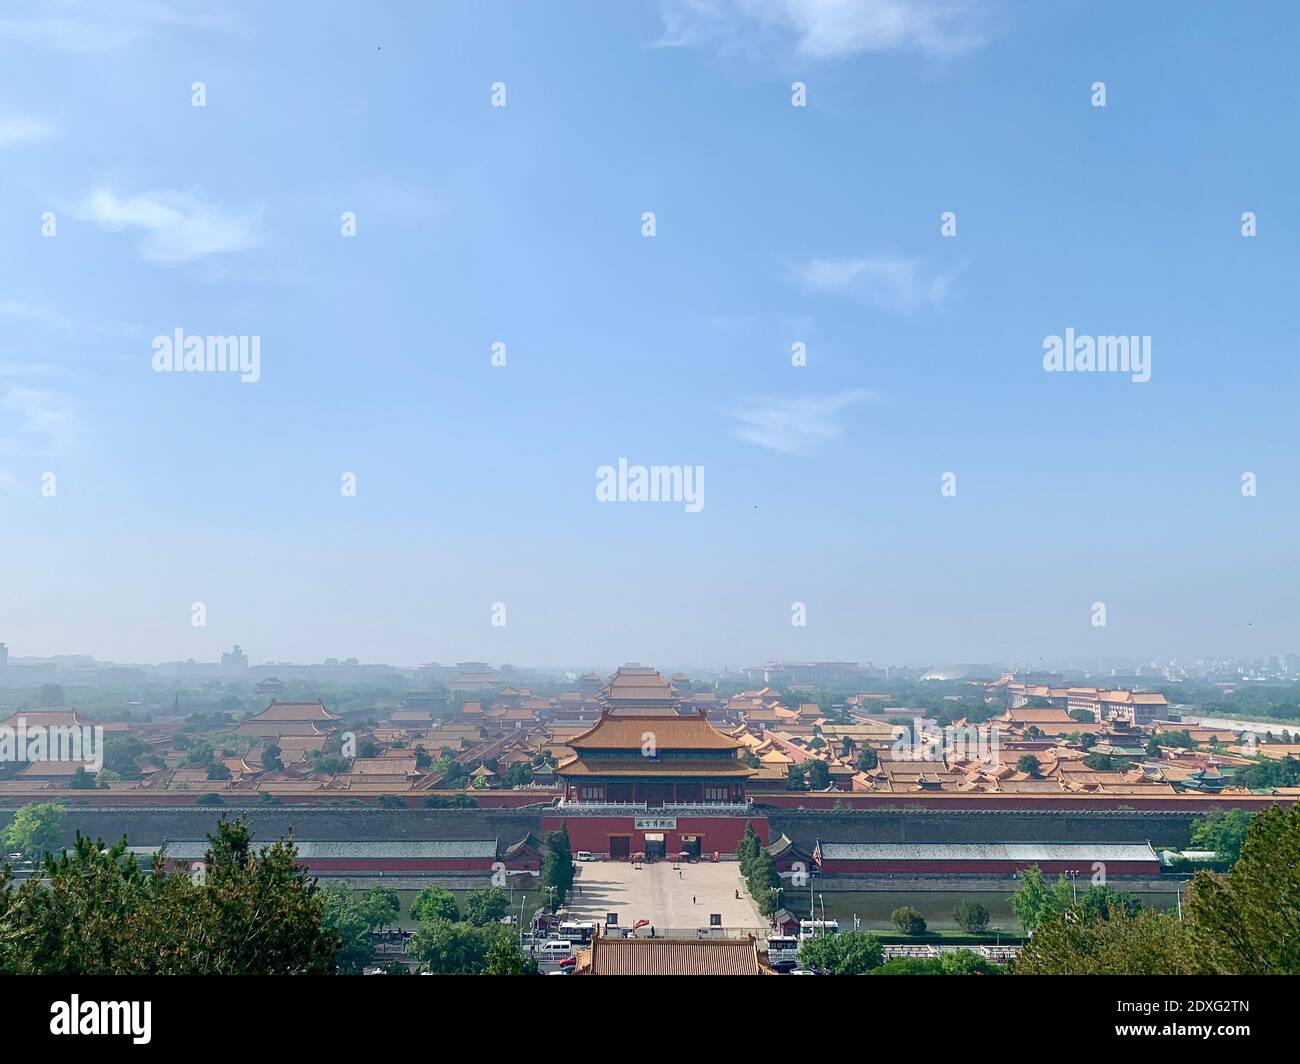 (201224) -- PECHINO, 24 dicembre 2020 (Xinhua) -- Foto scattata con un telefono cellulare mostra una panoramica del Museo del Palazzo a Pechino, capitale della Cina, 22 maggio 2020. L'anno 2020 segna il 600° anniversario della Città Proibita. Costruita tra il 1406 e il 1420, la Città Proibita misura 961 metri da nord a sud e 753 metri da est a ovest, su un'area di circa 720,000 metri quadrati. Caratterizzato da pareti rosse e da tegole vetrate gialle, rappresenta il culmine della tradizionale architettura sontuosa cinese, influenzando gli sviluppi culturali e architettonici dell'Asia orientale e del surr Foto Stock